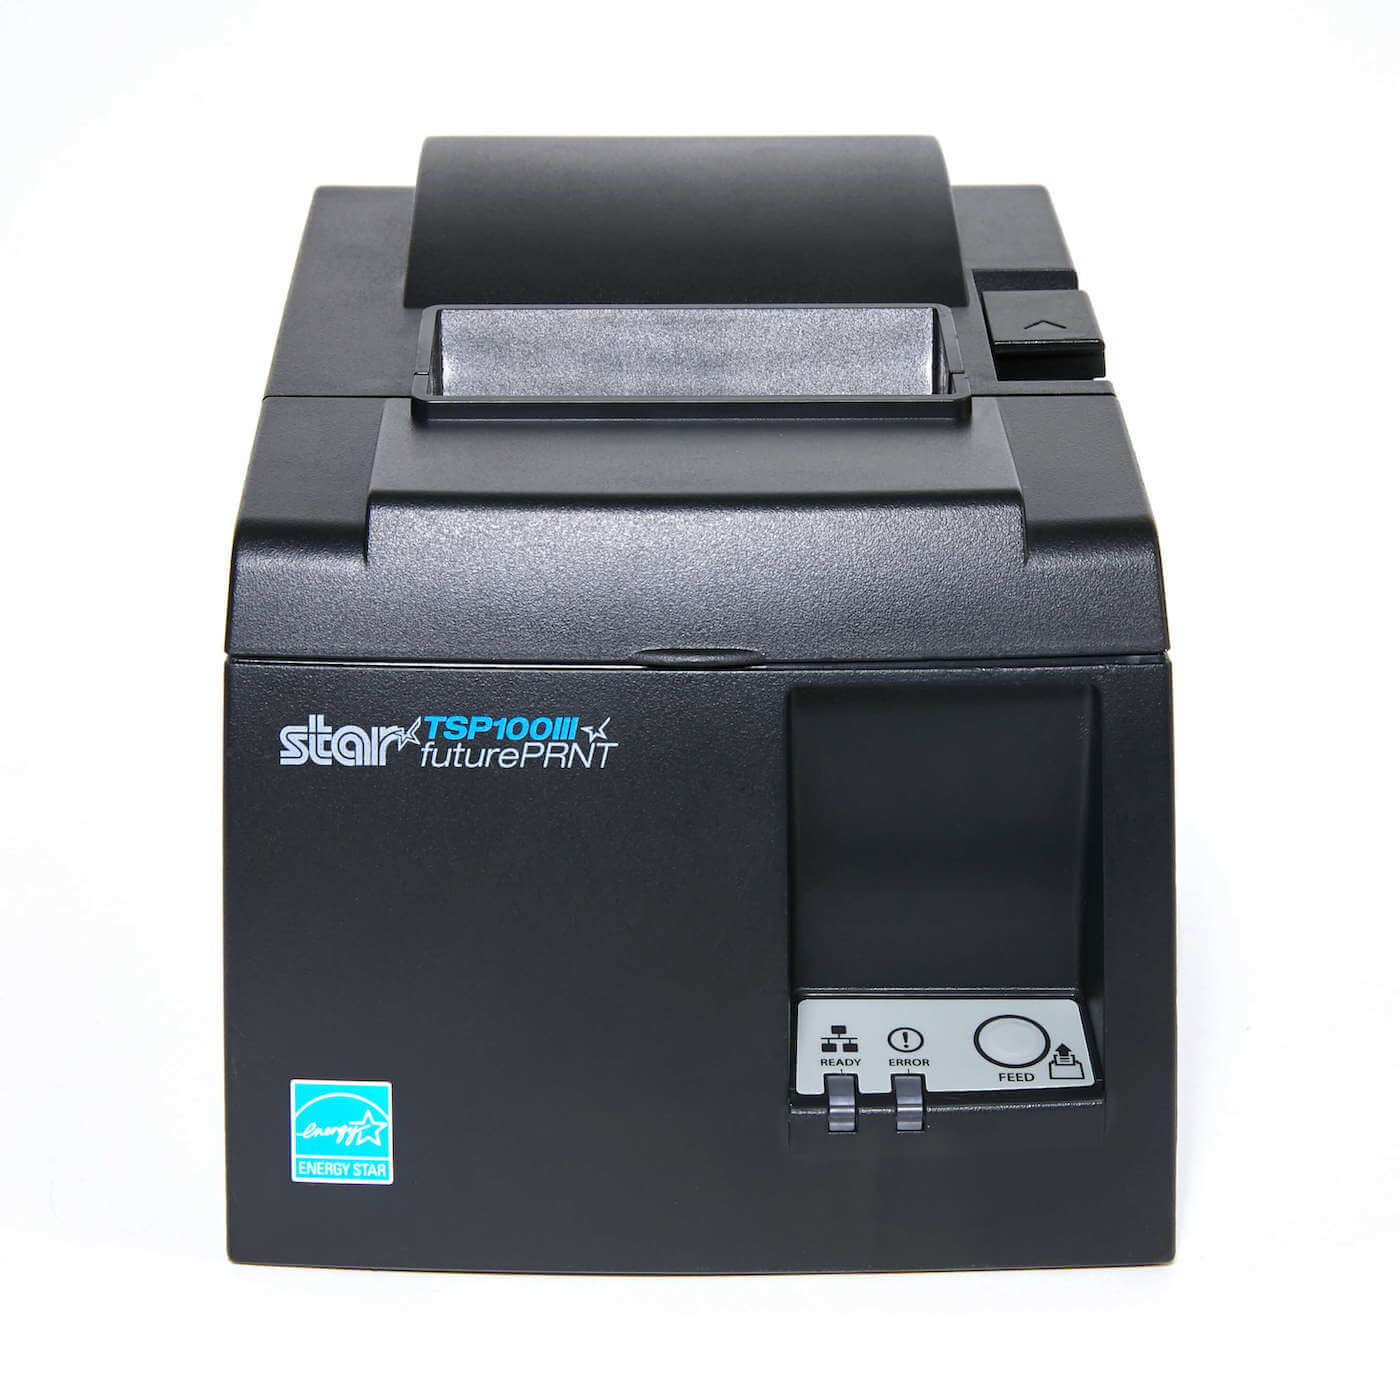 star tsp100 printer.jpg